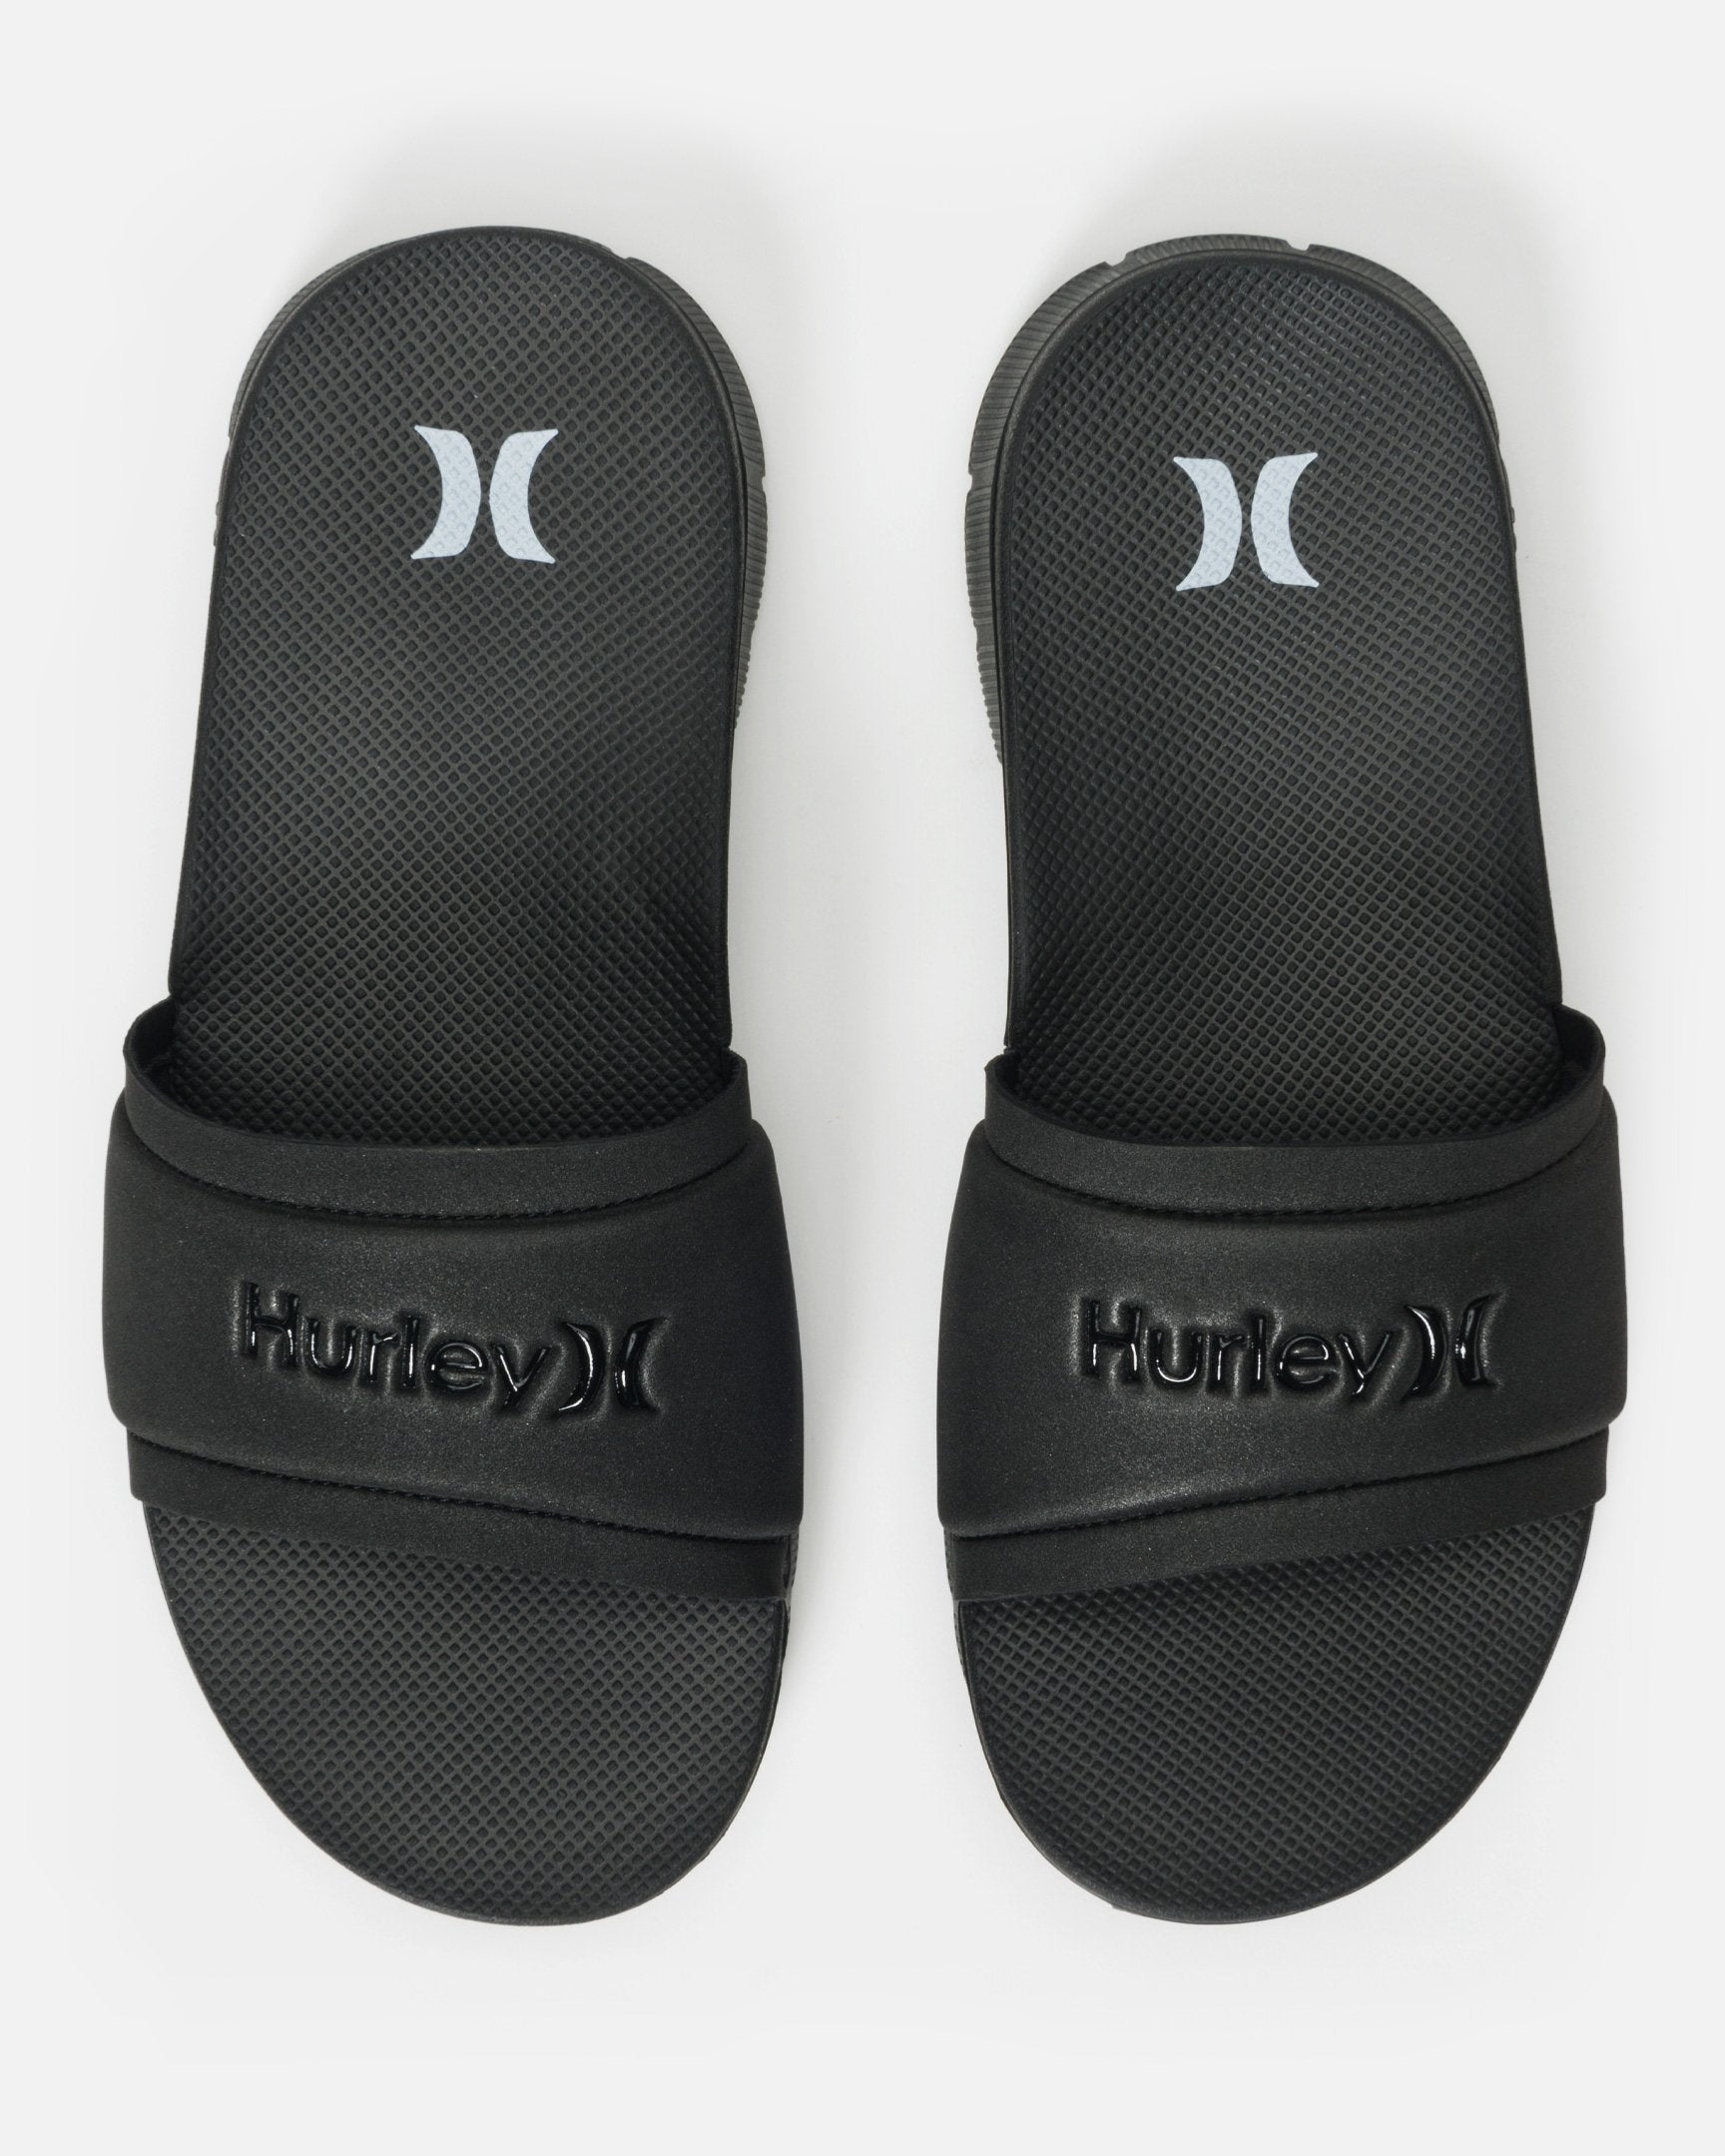 hurley flip flops womens